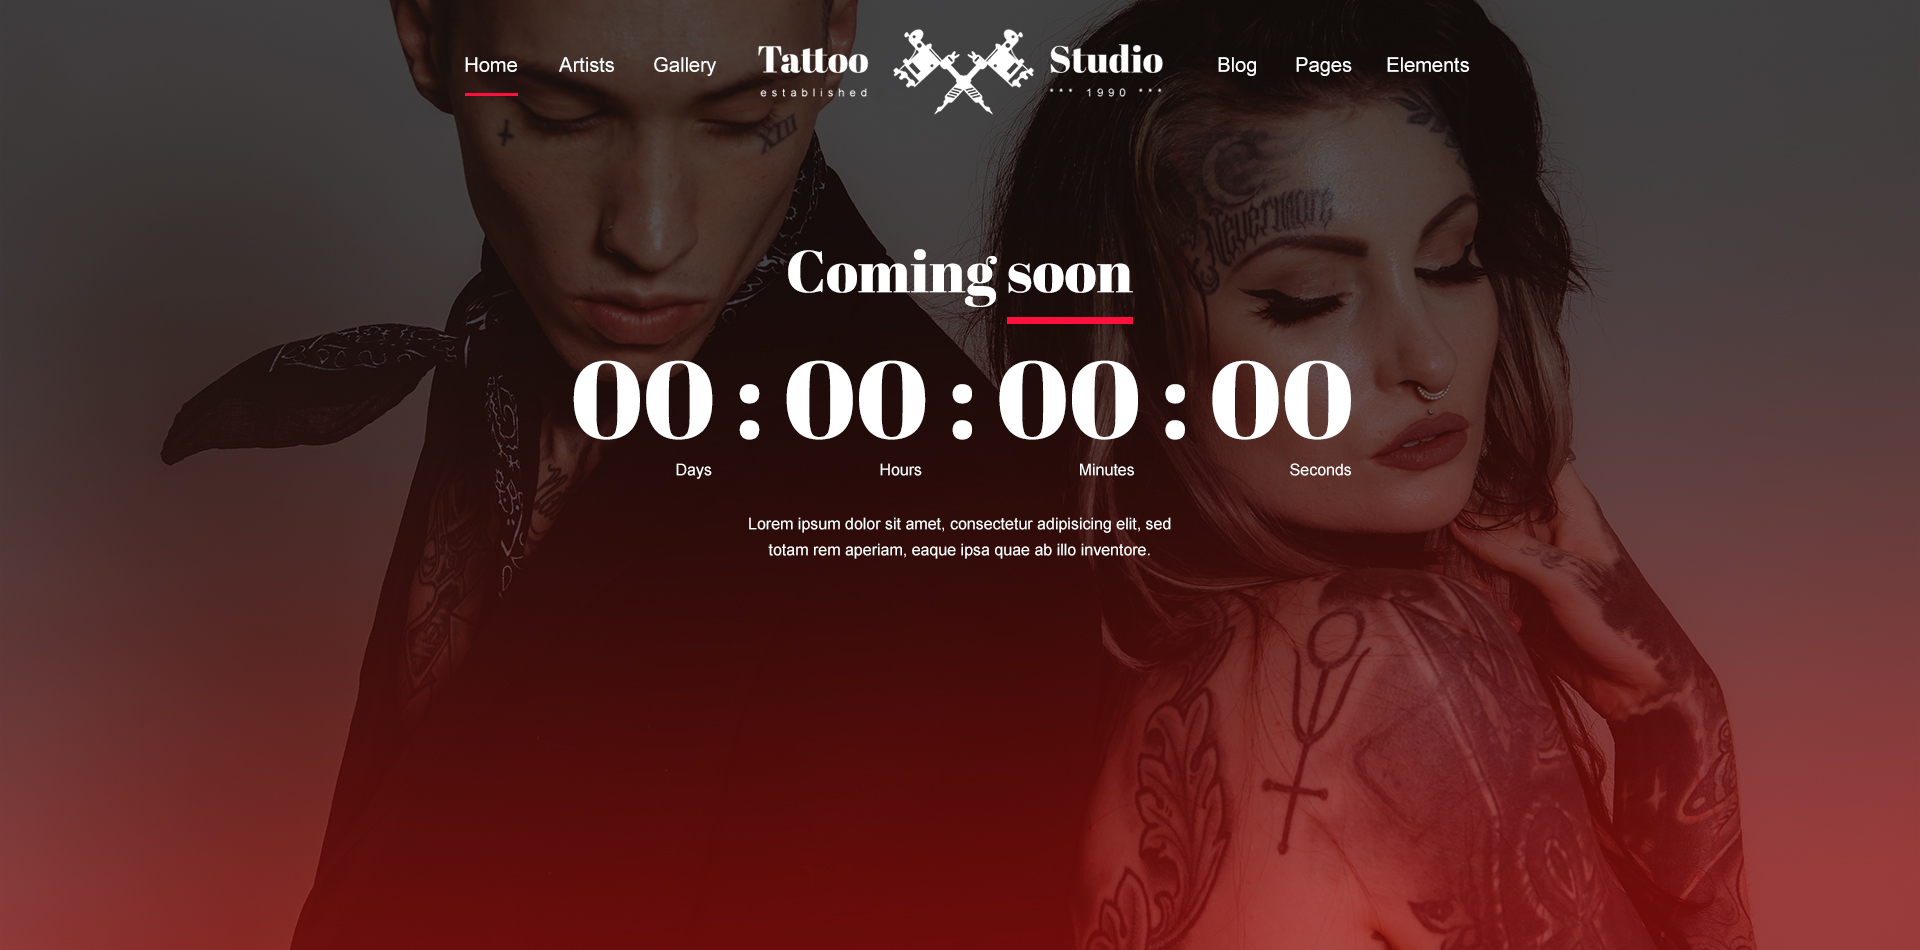 Tattoo - Tattoo Studio PSD Template